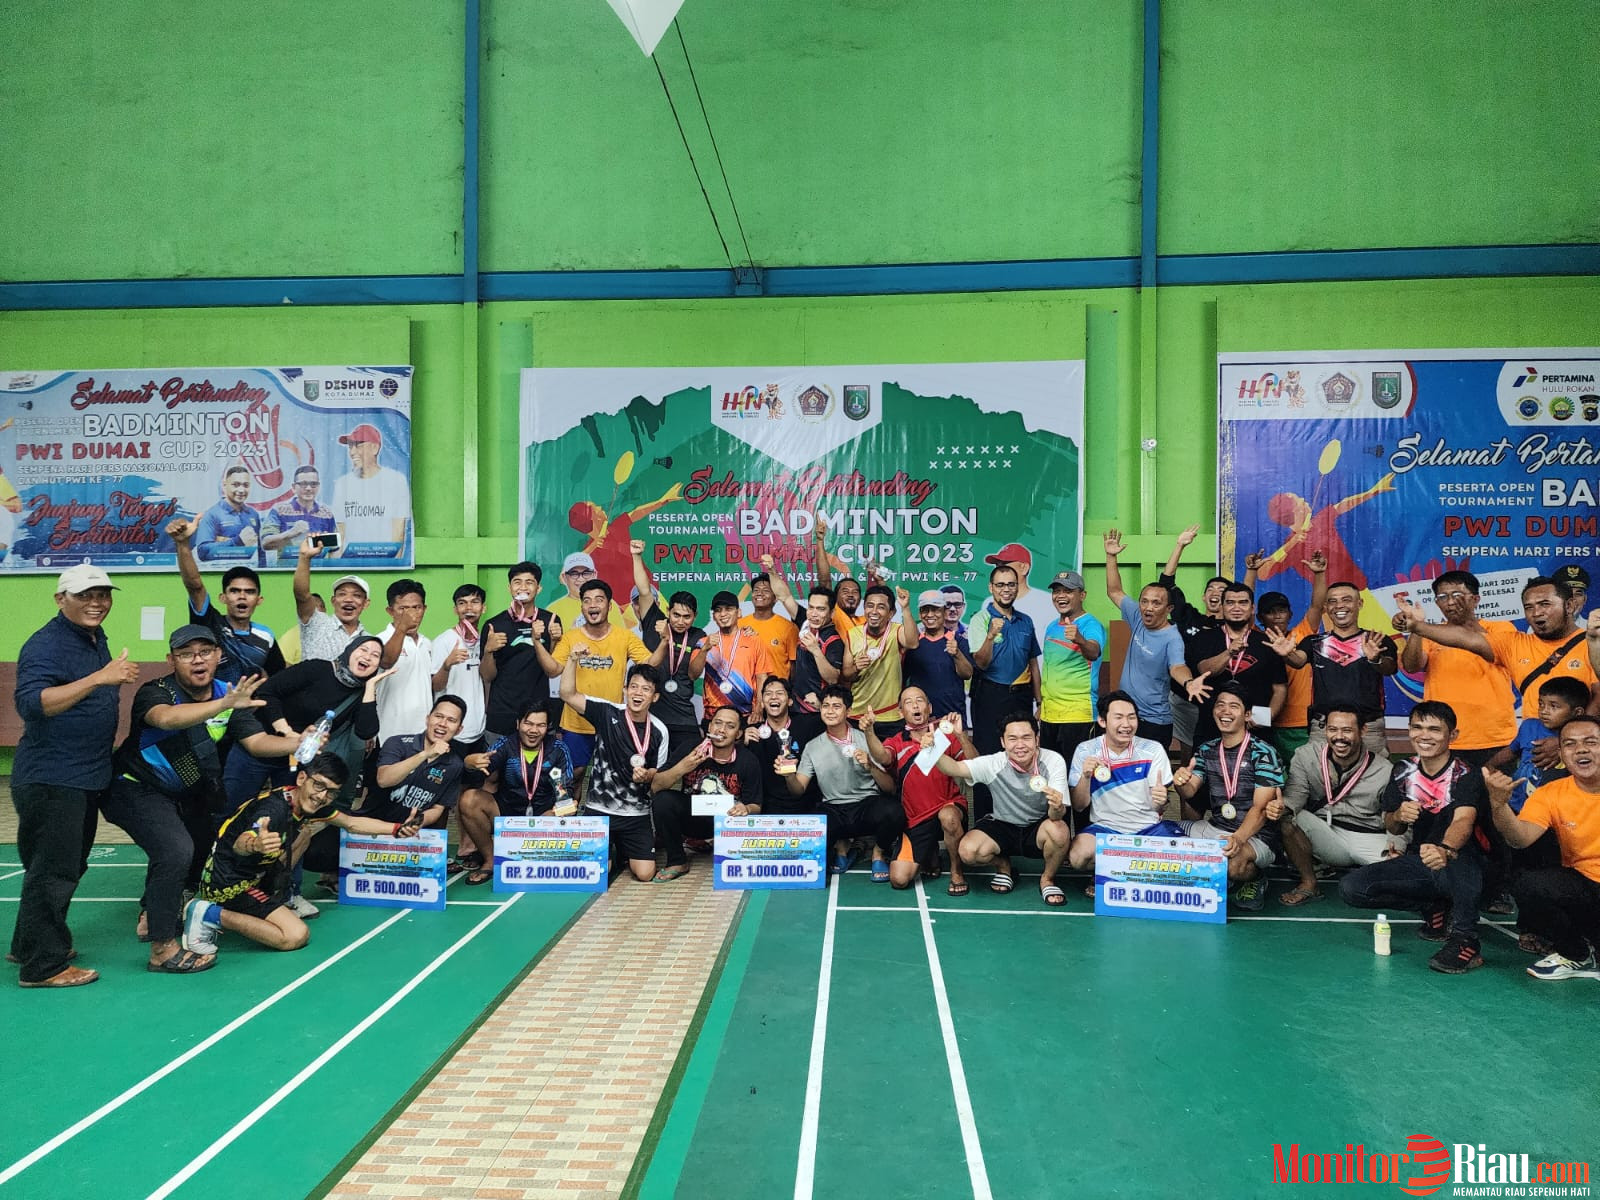 124 Atlet Berlaga di Open Turnamen Badminton PWI Dumai